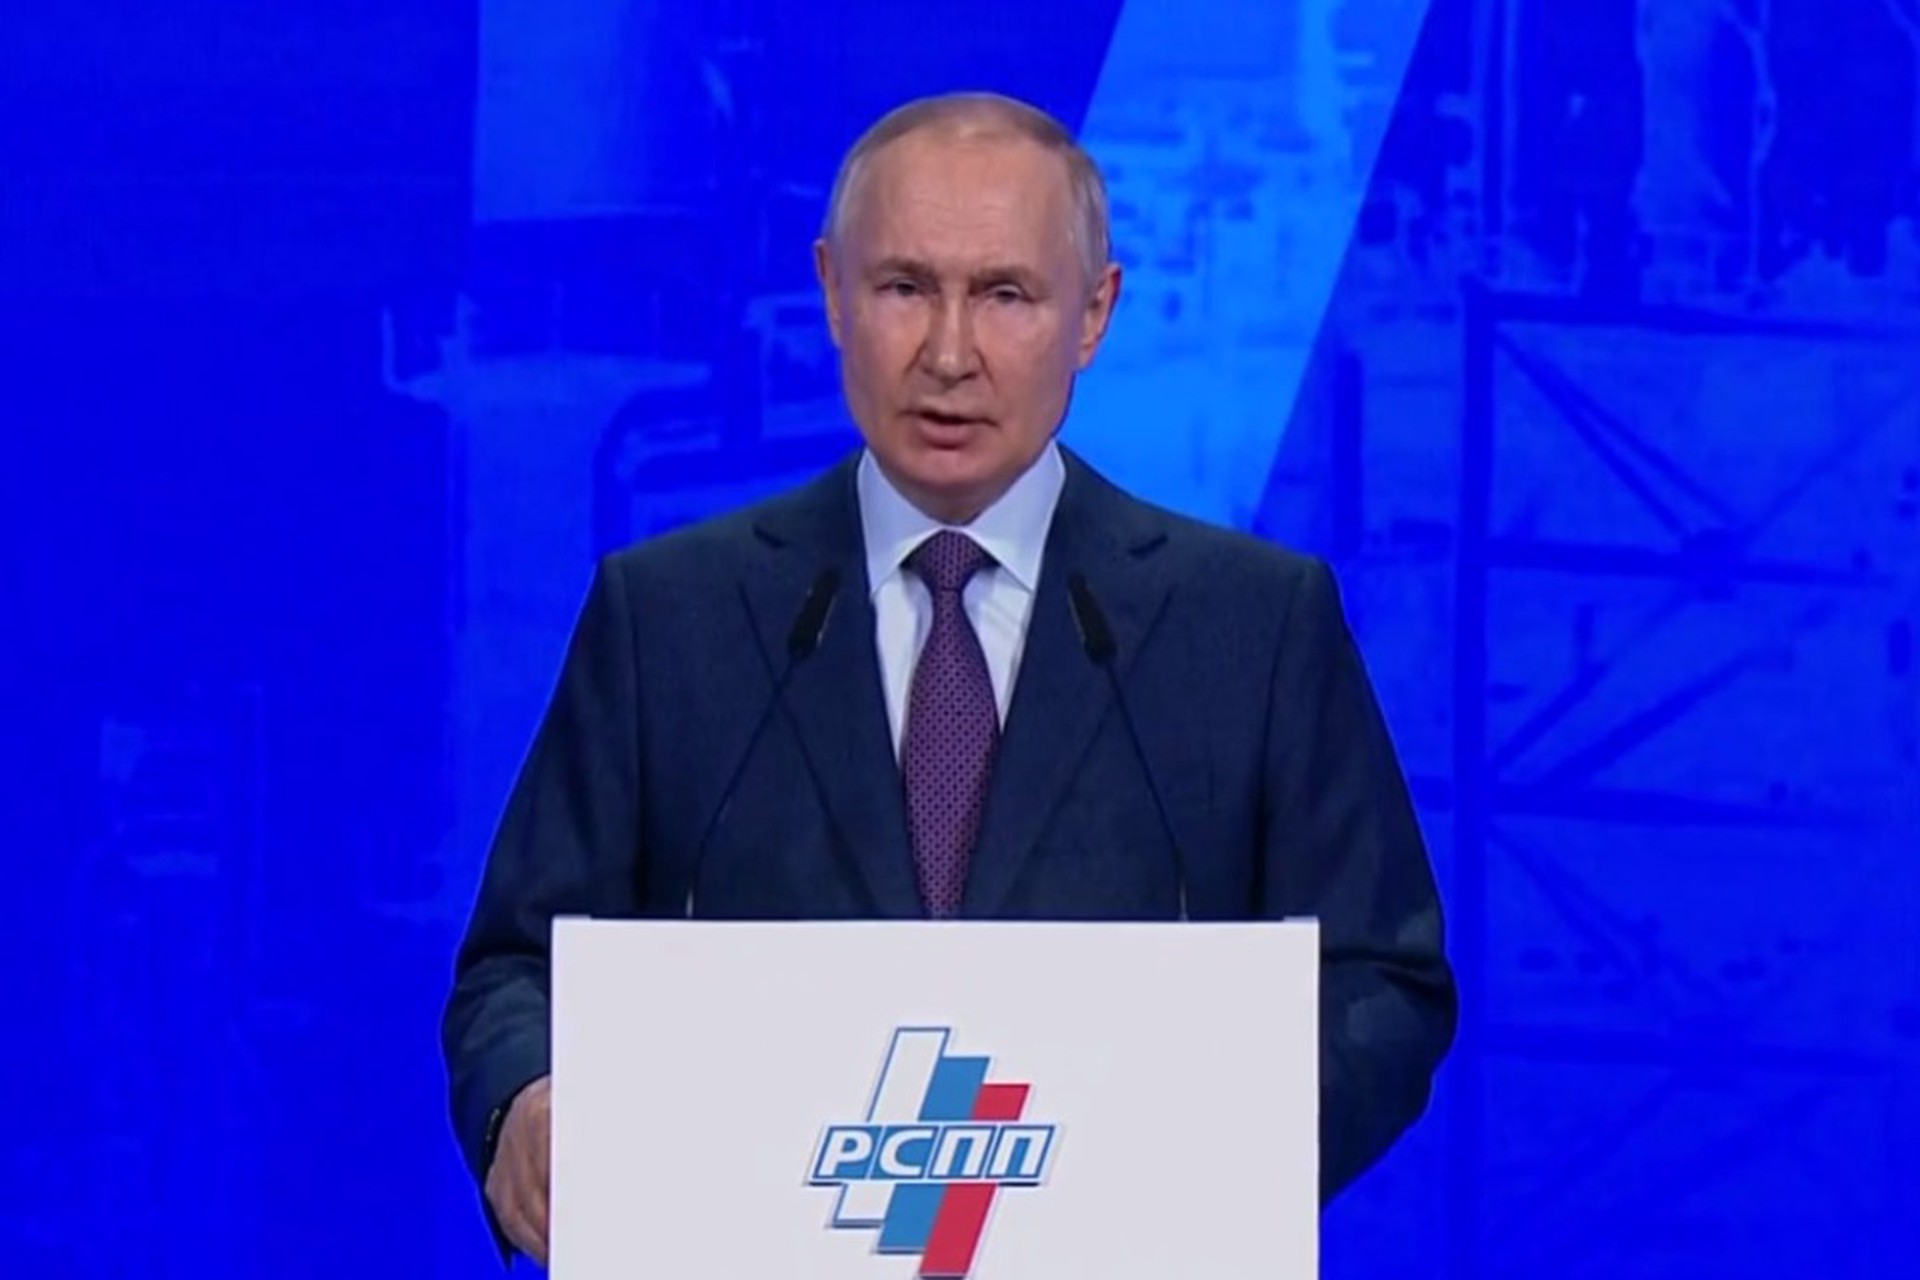 Путин: Российская экономика начинает развиваться по новой модели